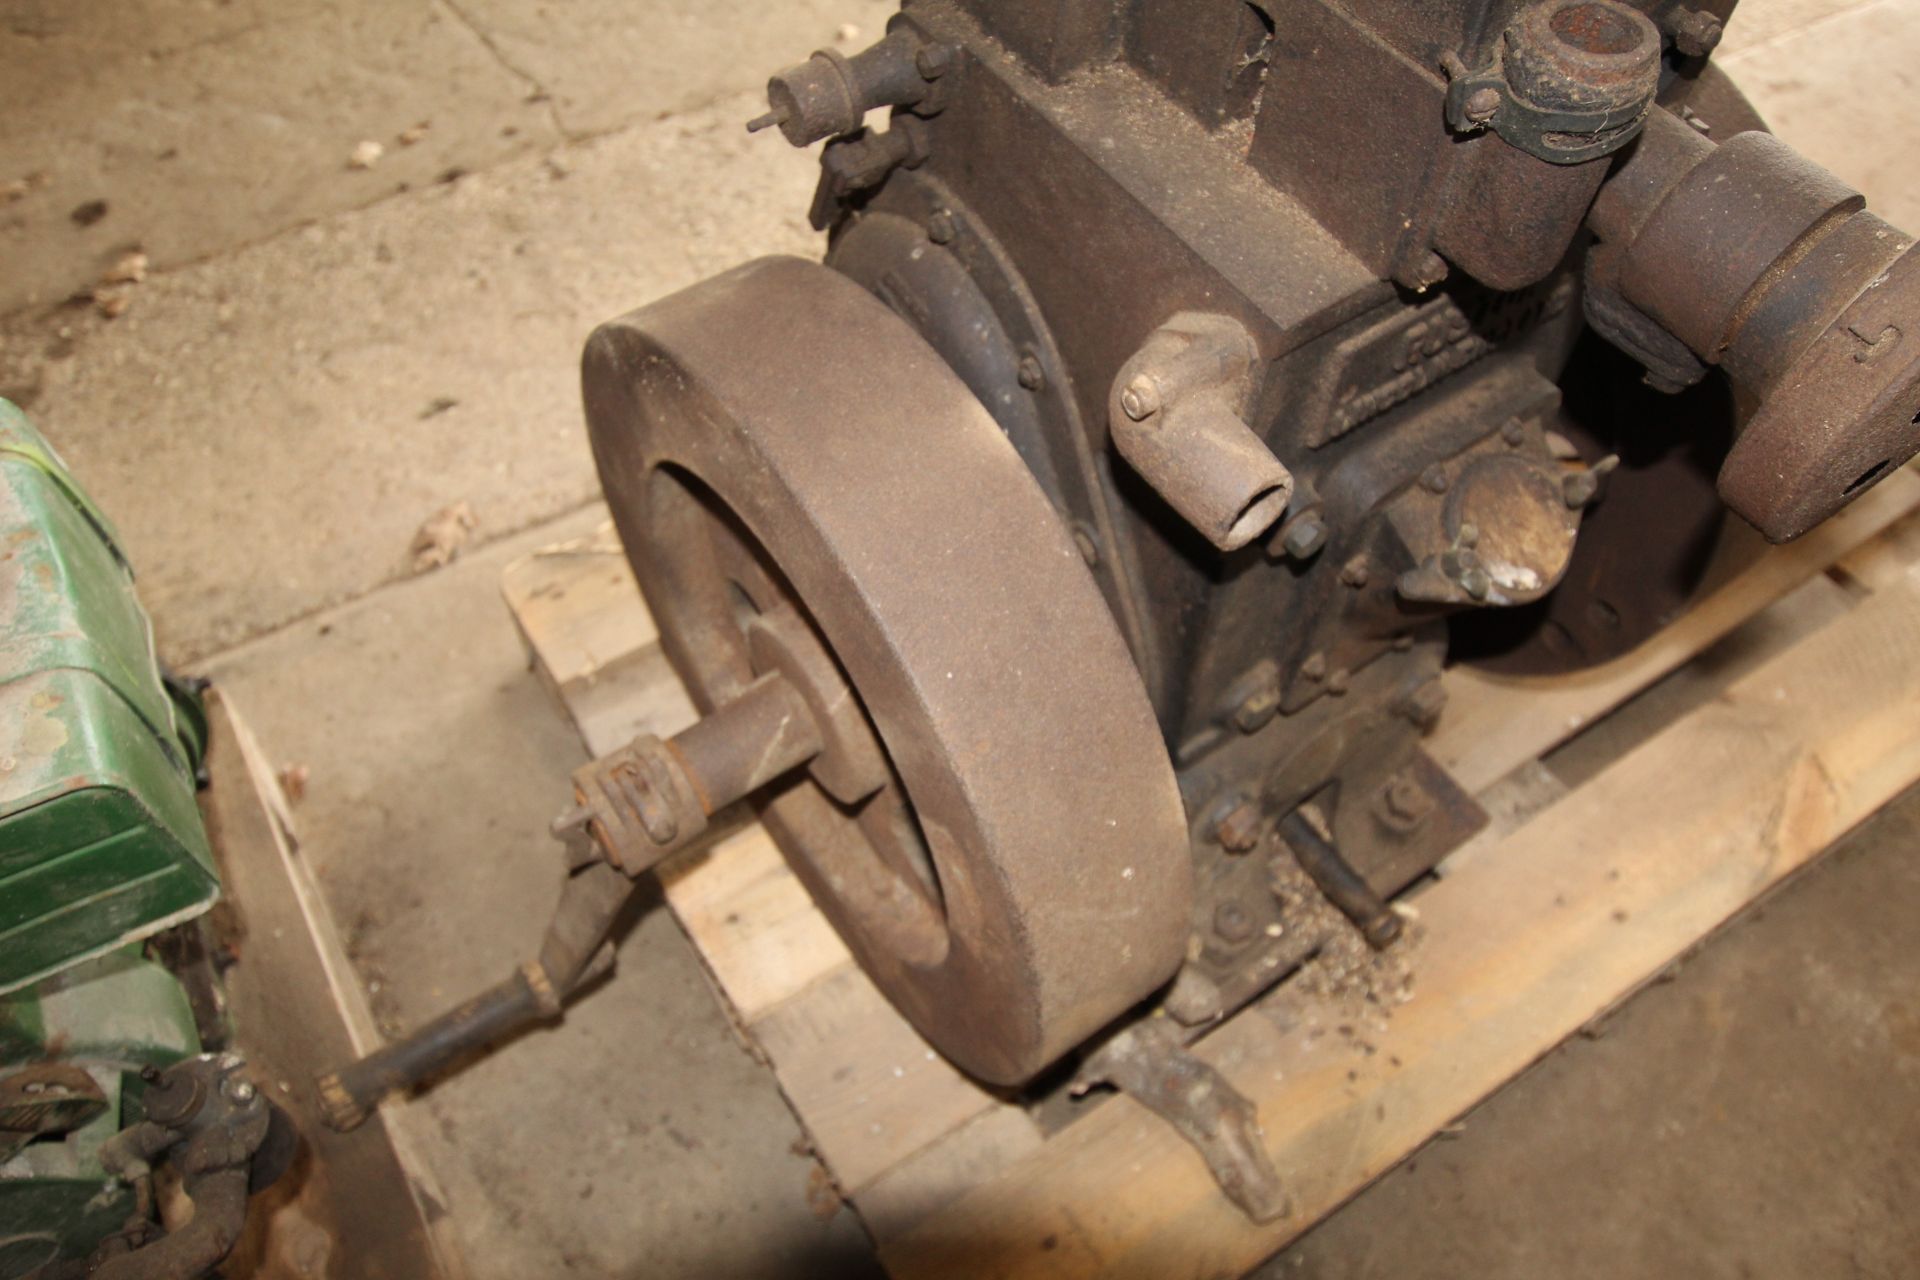 Ruston single cylinder stationary engine. - Image 6 of 6